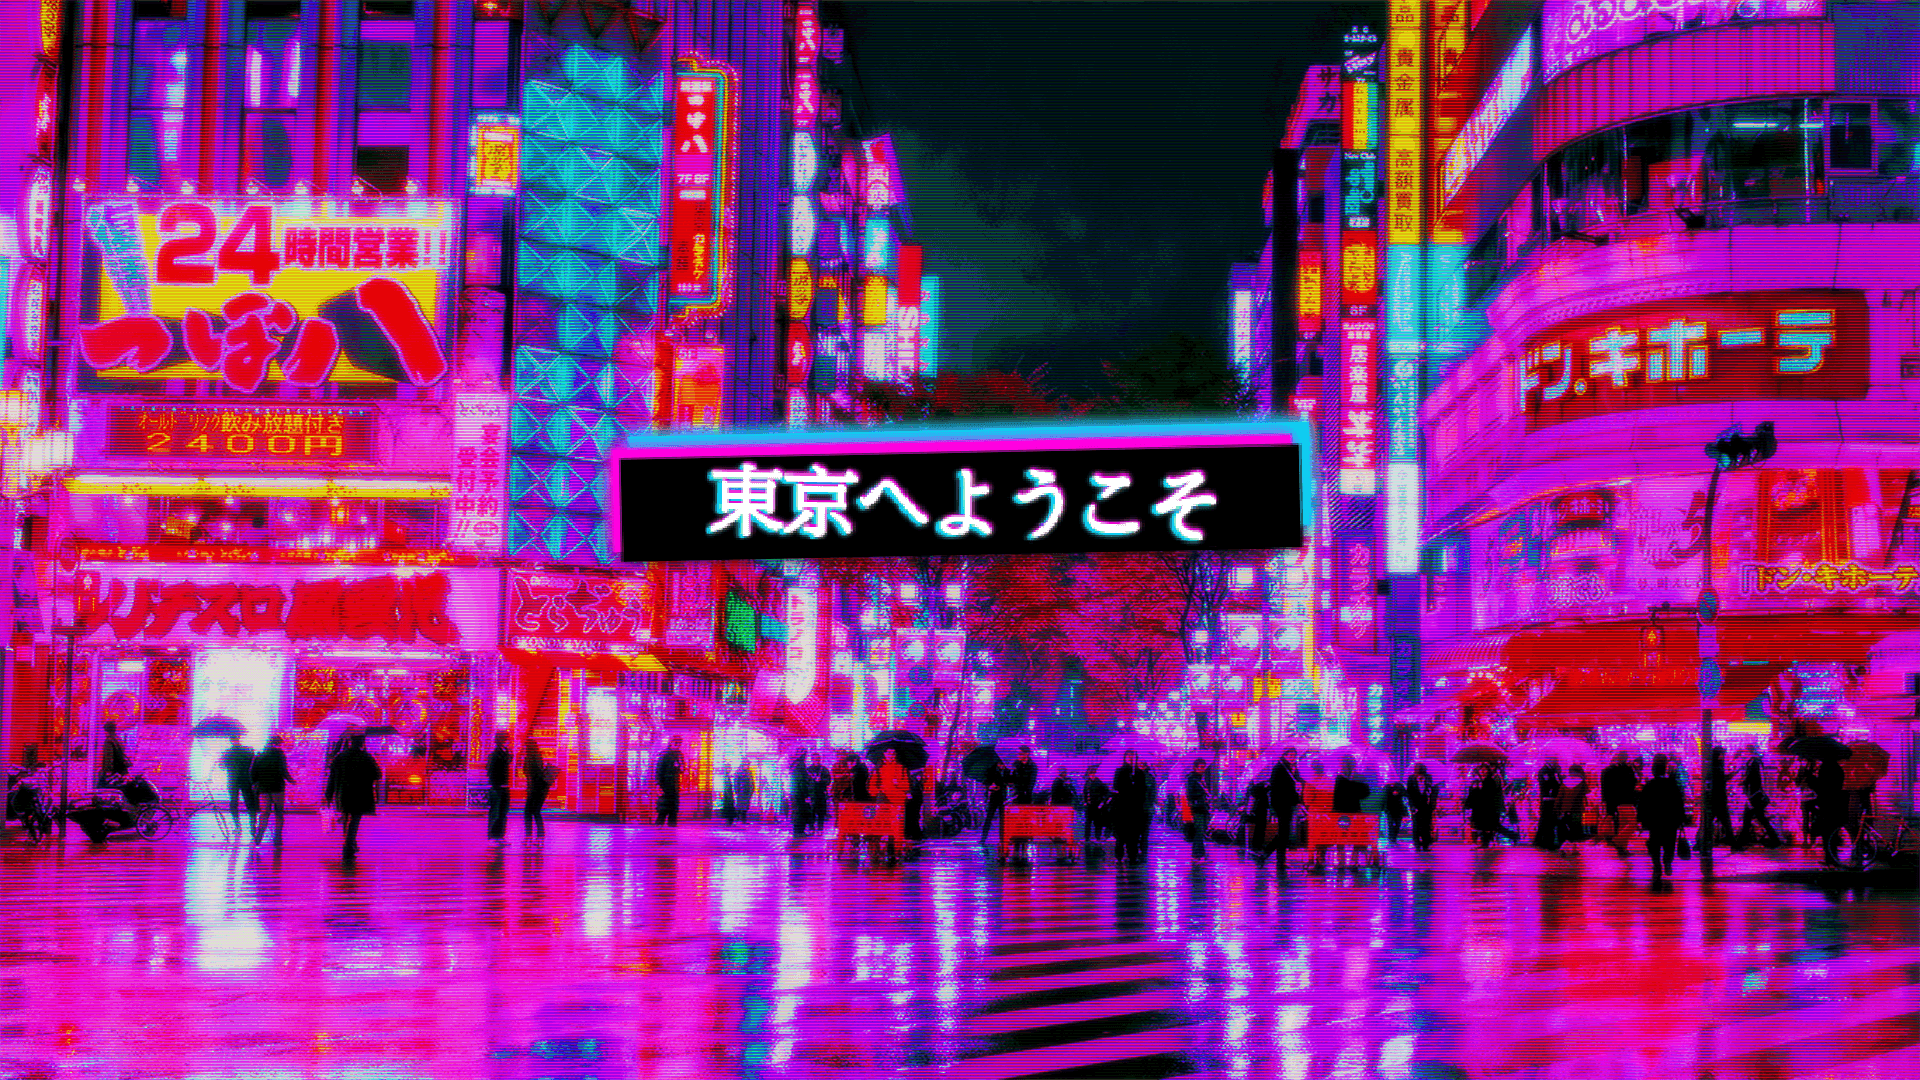 Hintergrundbildvon Tokyo In Lila Mit Motiv Des Tokyo Crossing.